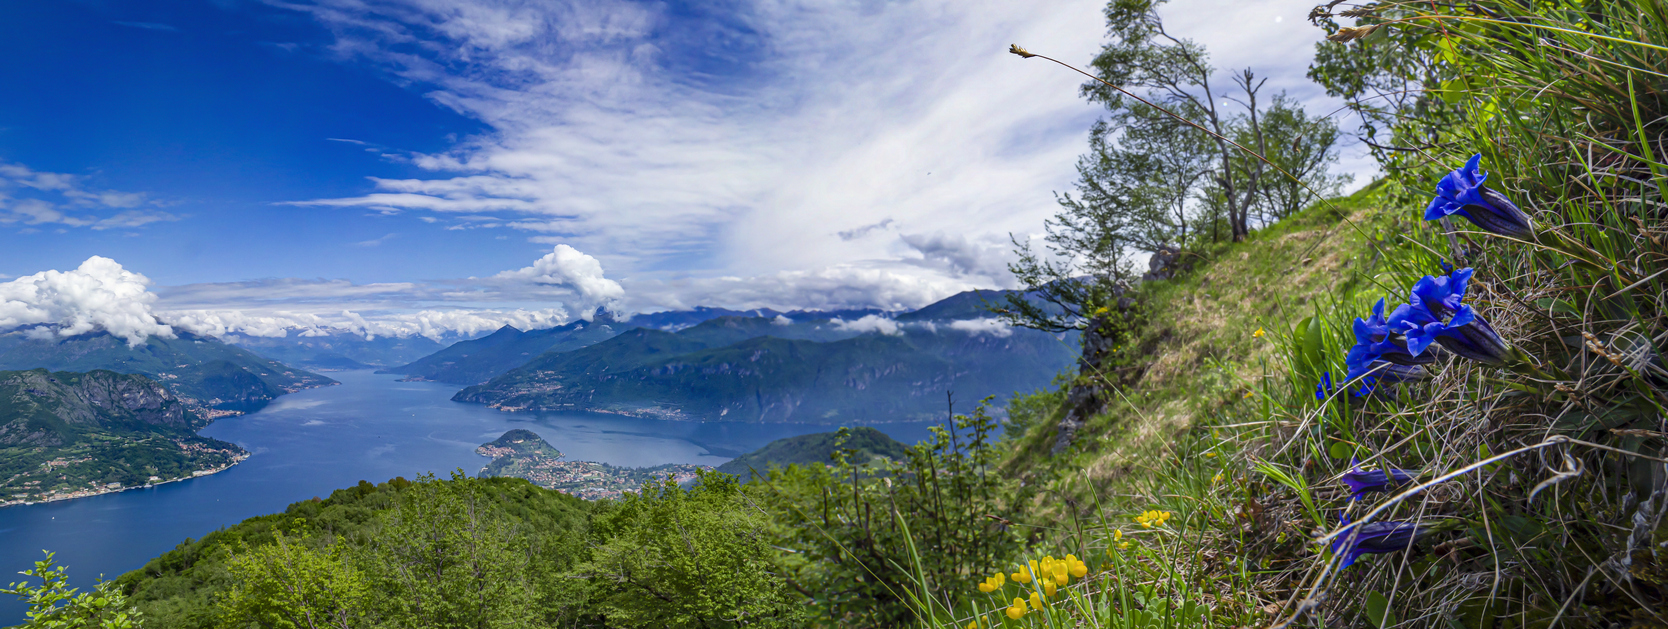 Lago di Como: weekend a Lezzeno fra tour in bici, relax e buona cucina